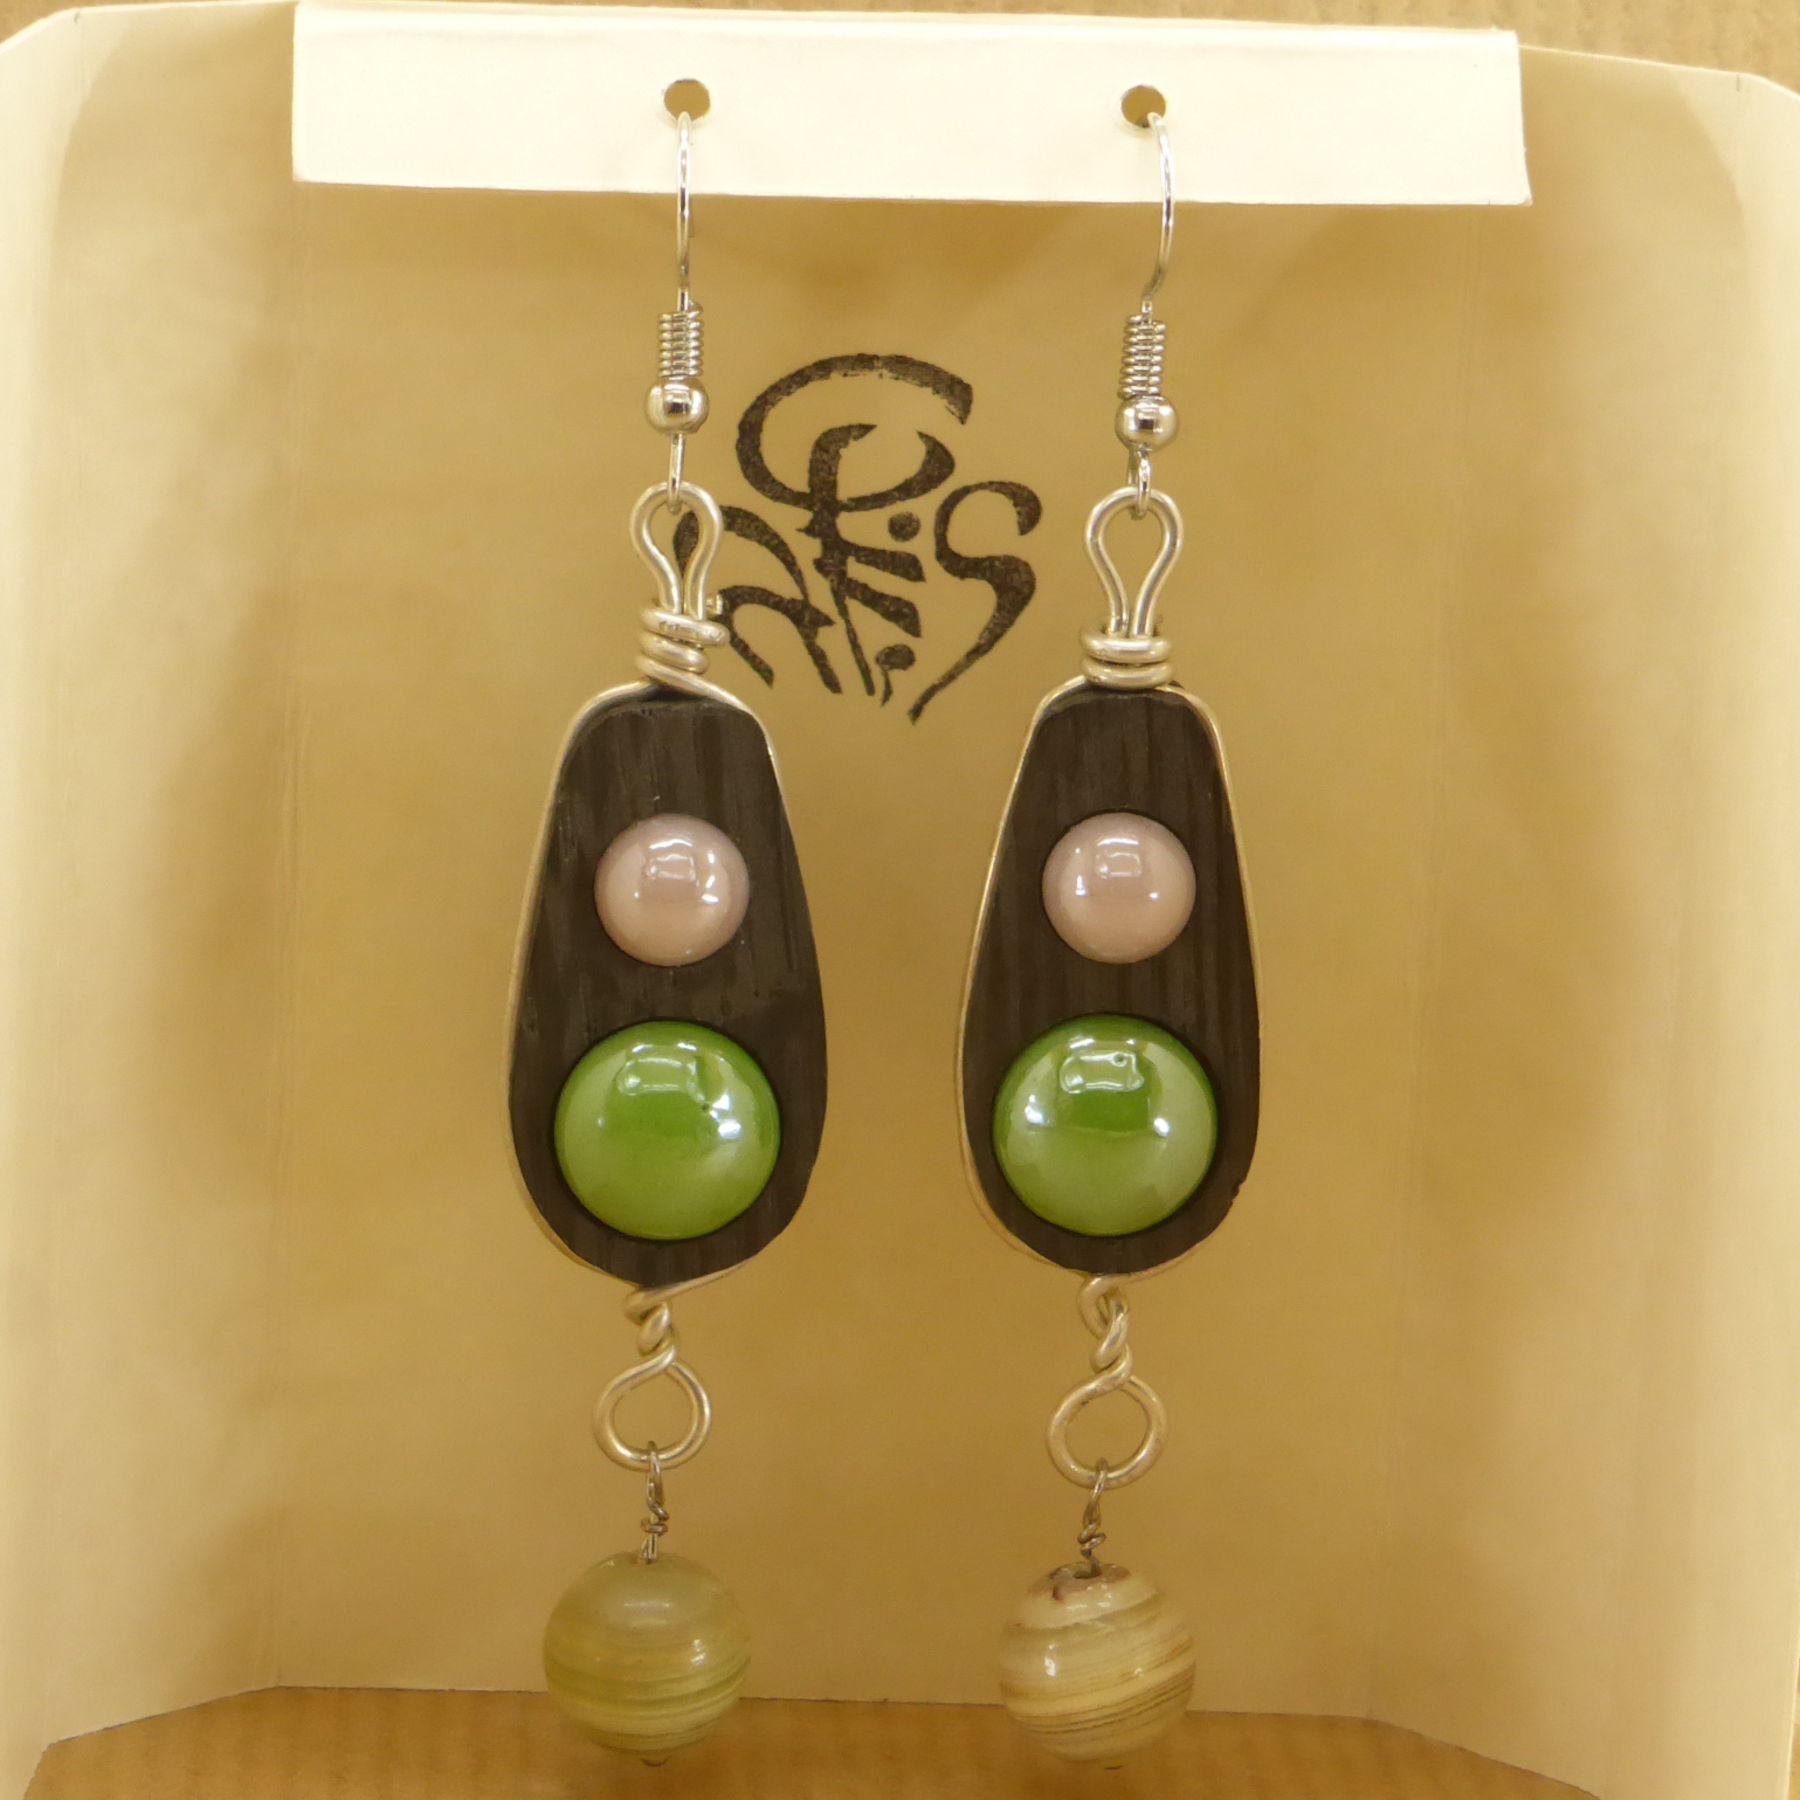 Boucles d'oreilles bois et céramiques verte et bleue sertie d'un fil argent 925 et perle agathe verte